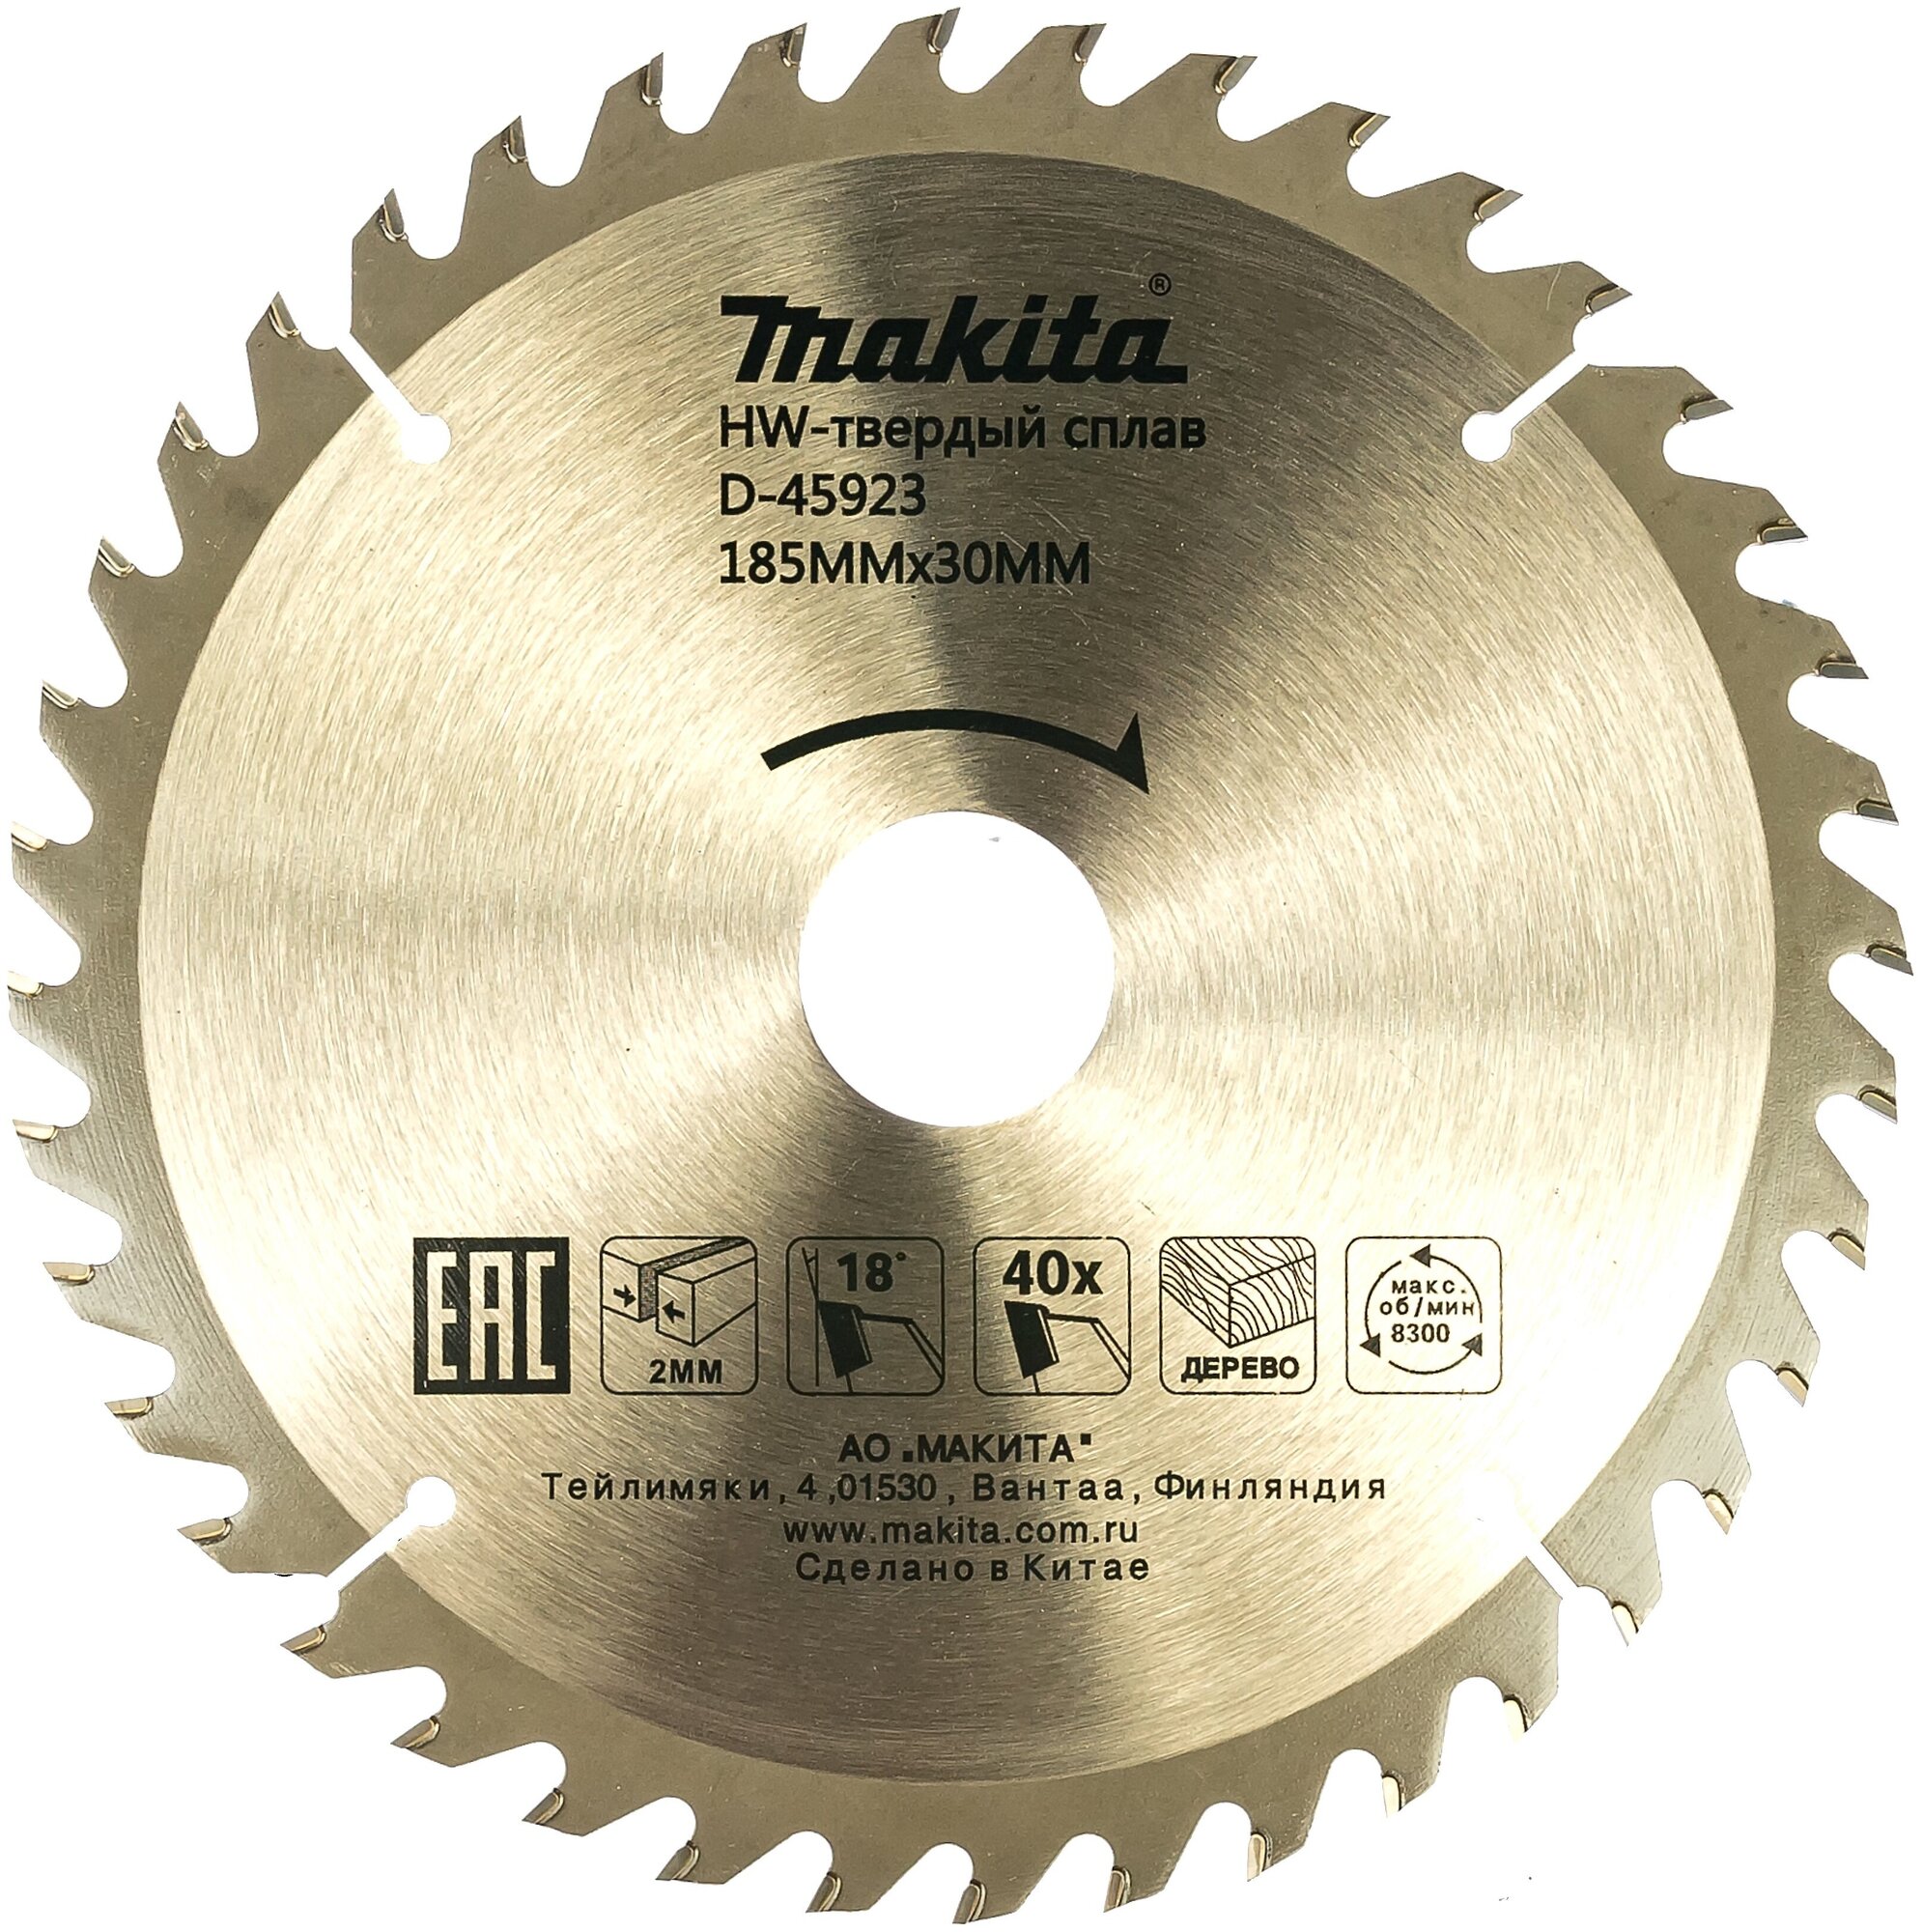 Makita Standart D-45923 пильный по дереву, 185x2.0x30mm, 40 зубьев